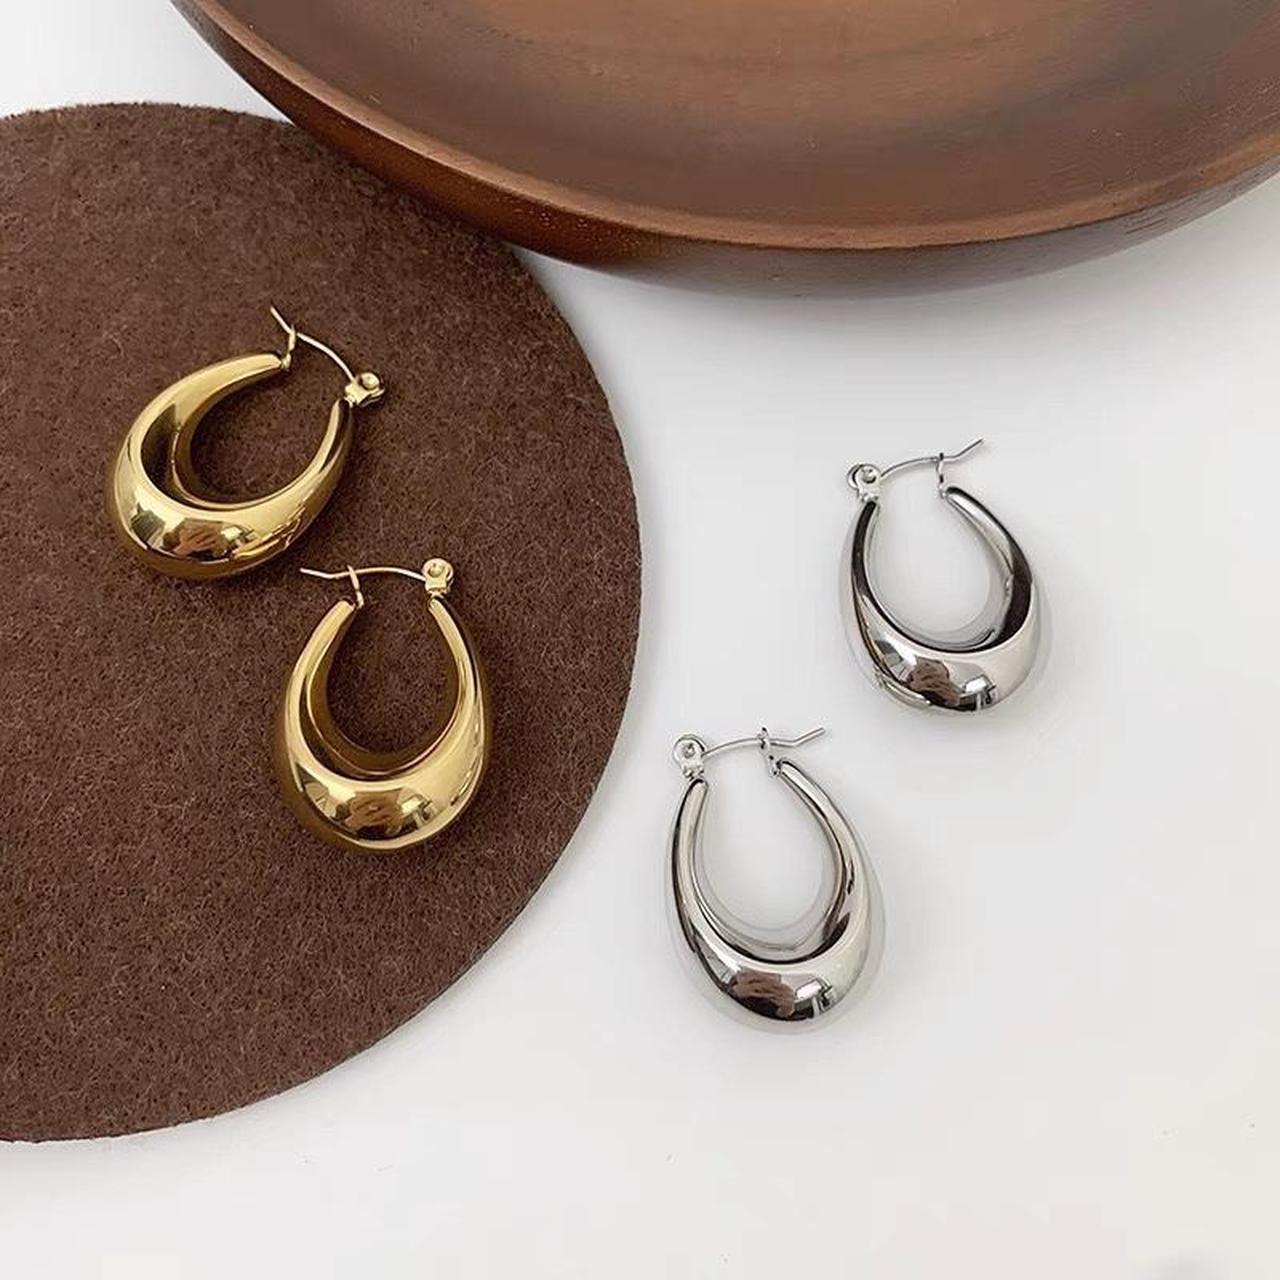 Product Image 2 - Oval hoops earrings funky hoops